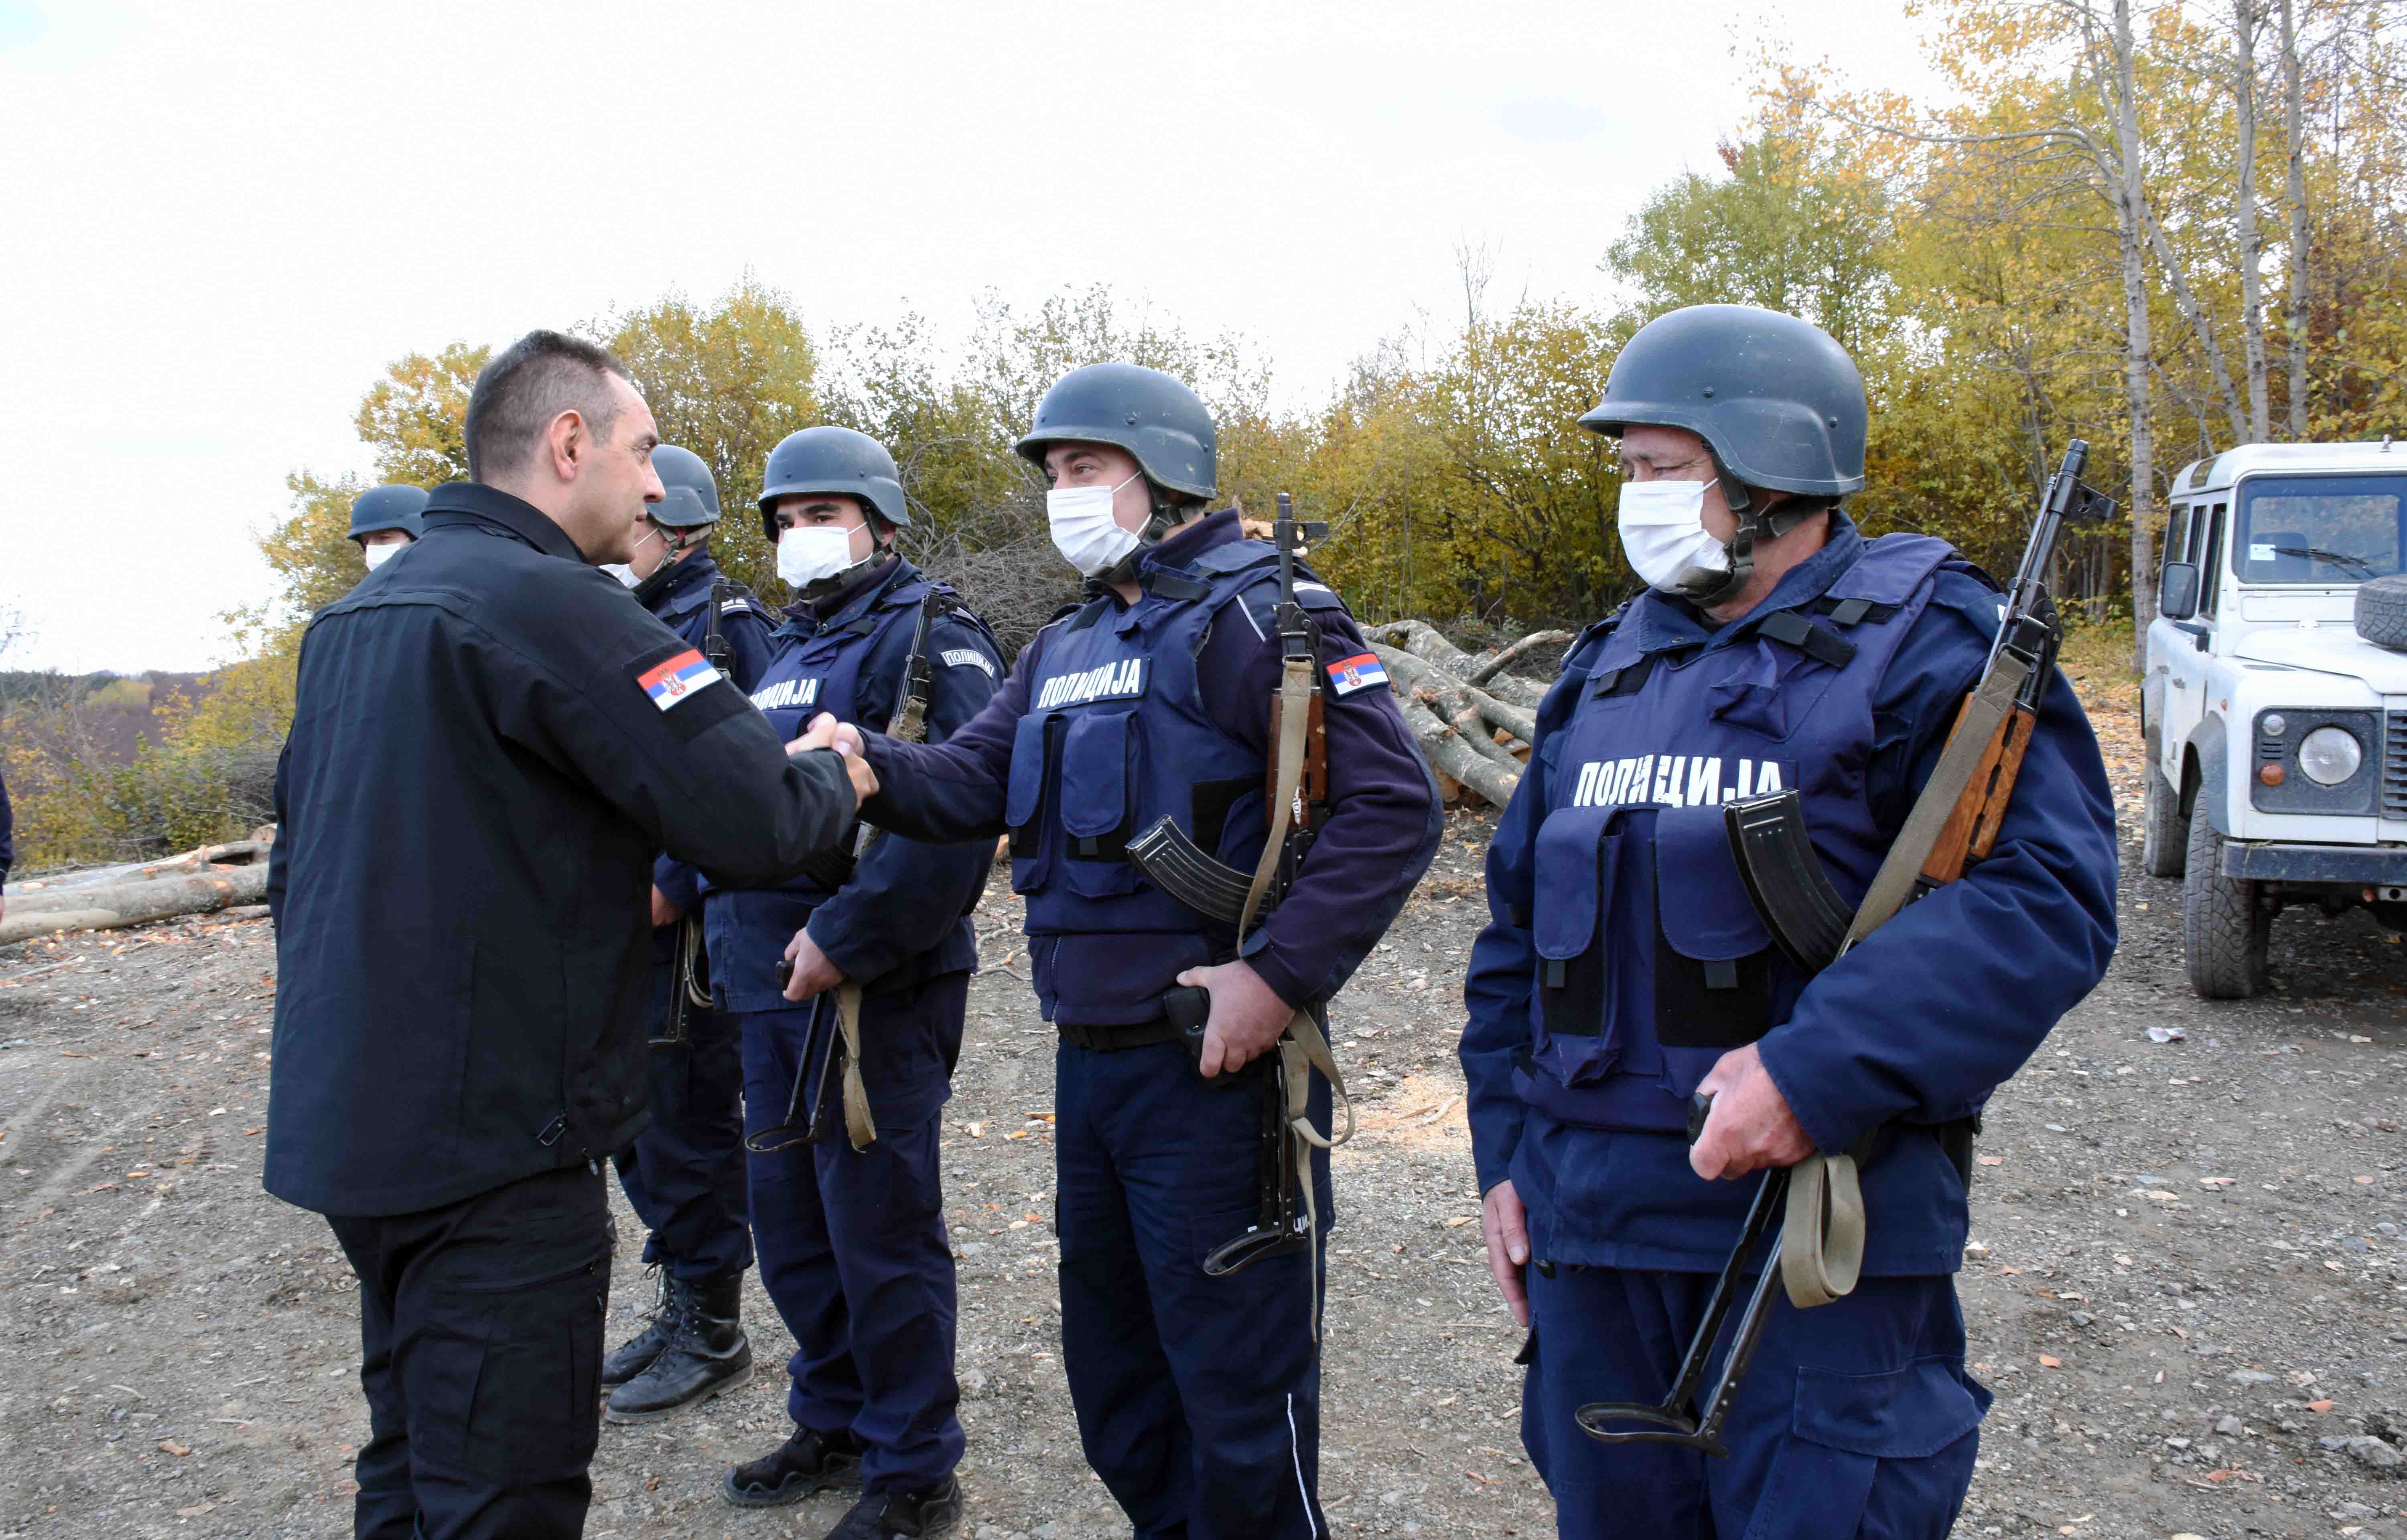 Министар Вулин: Угрожавање безбедности припадника српске полиције у КЗБ није прихватљиво